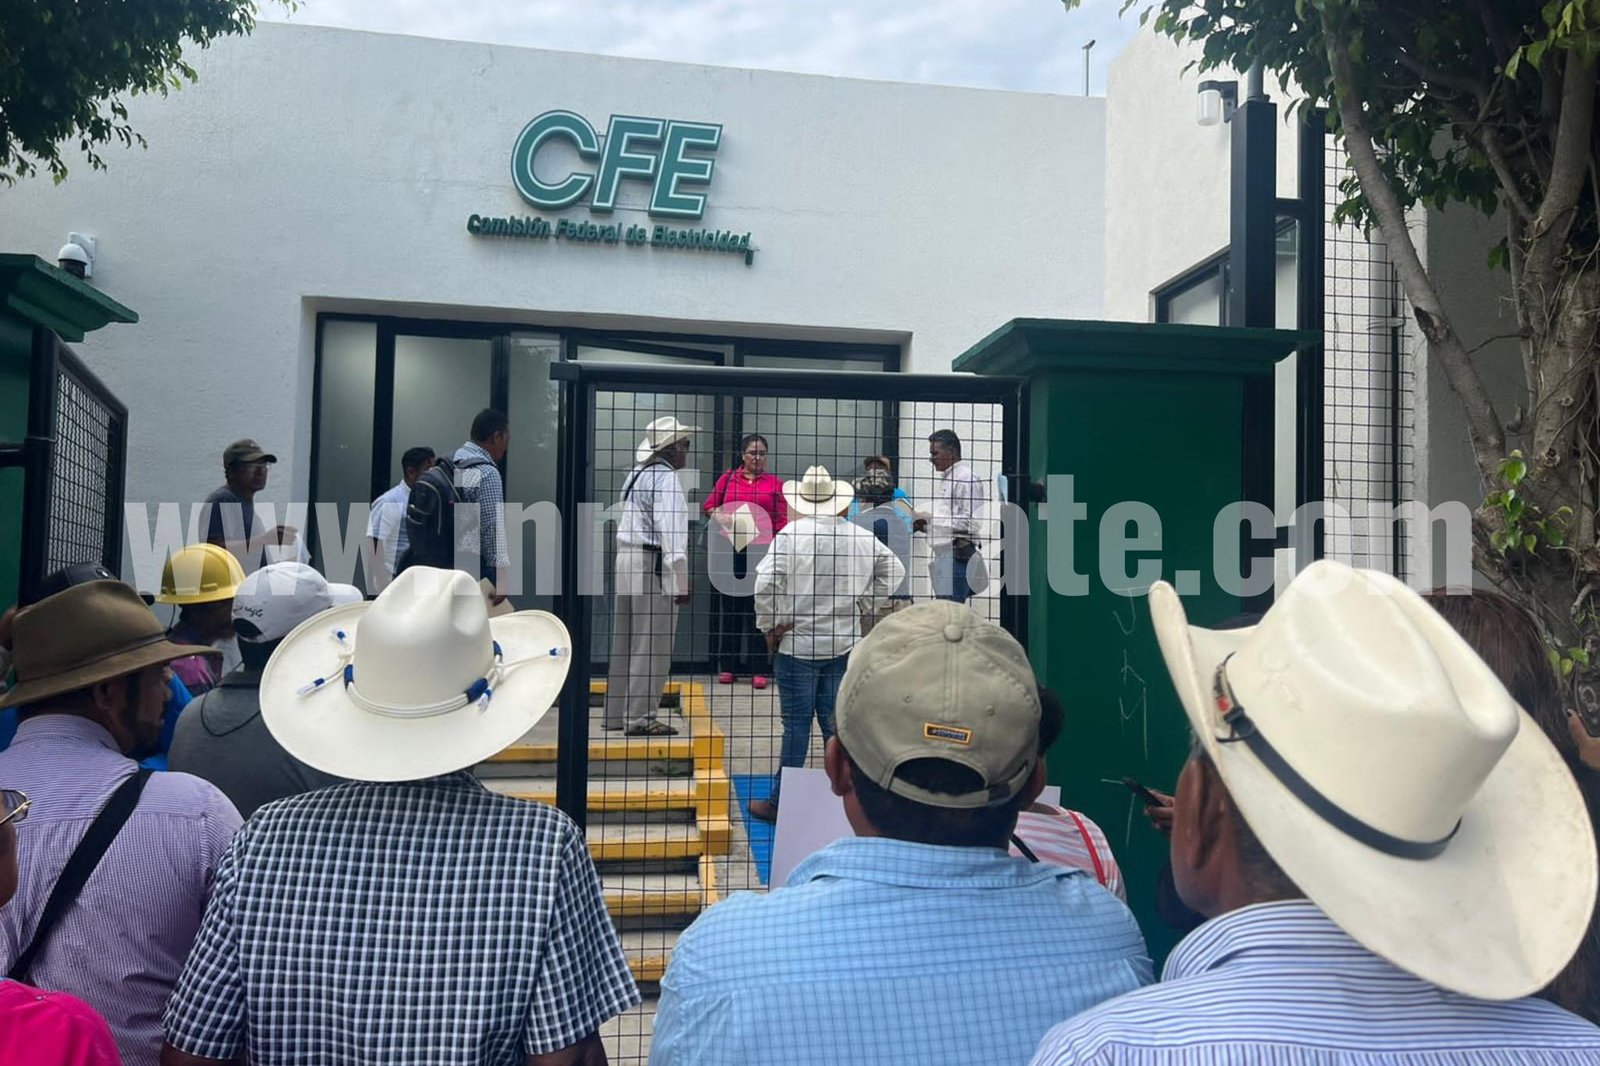 Pobladores de Huazolotitlán protestan en CFE; las fallas son constantes, dicen